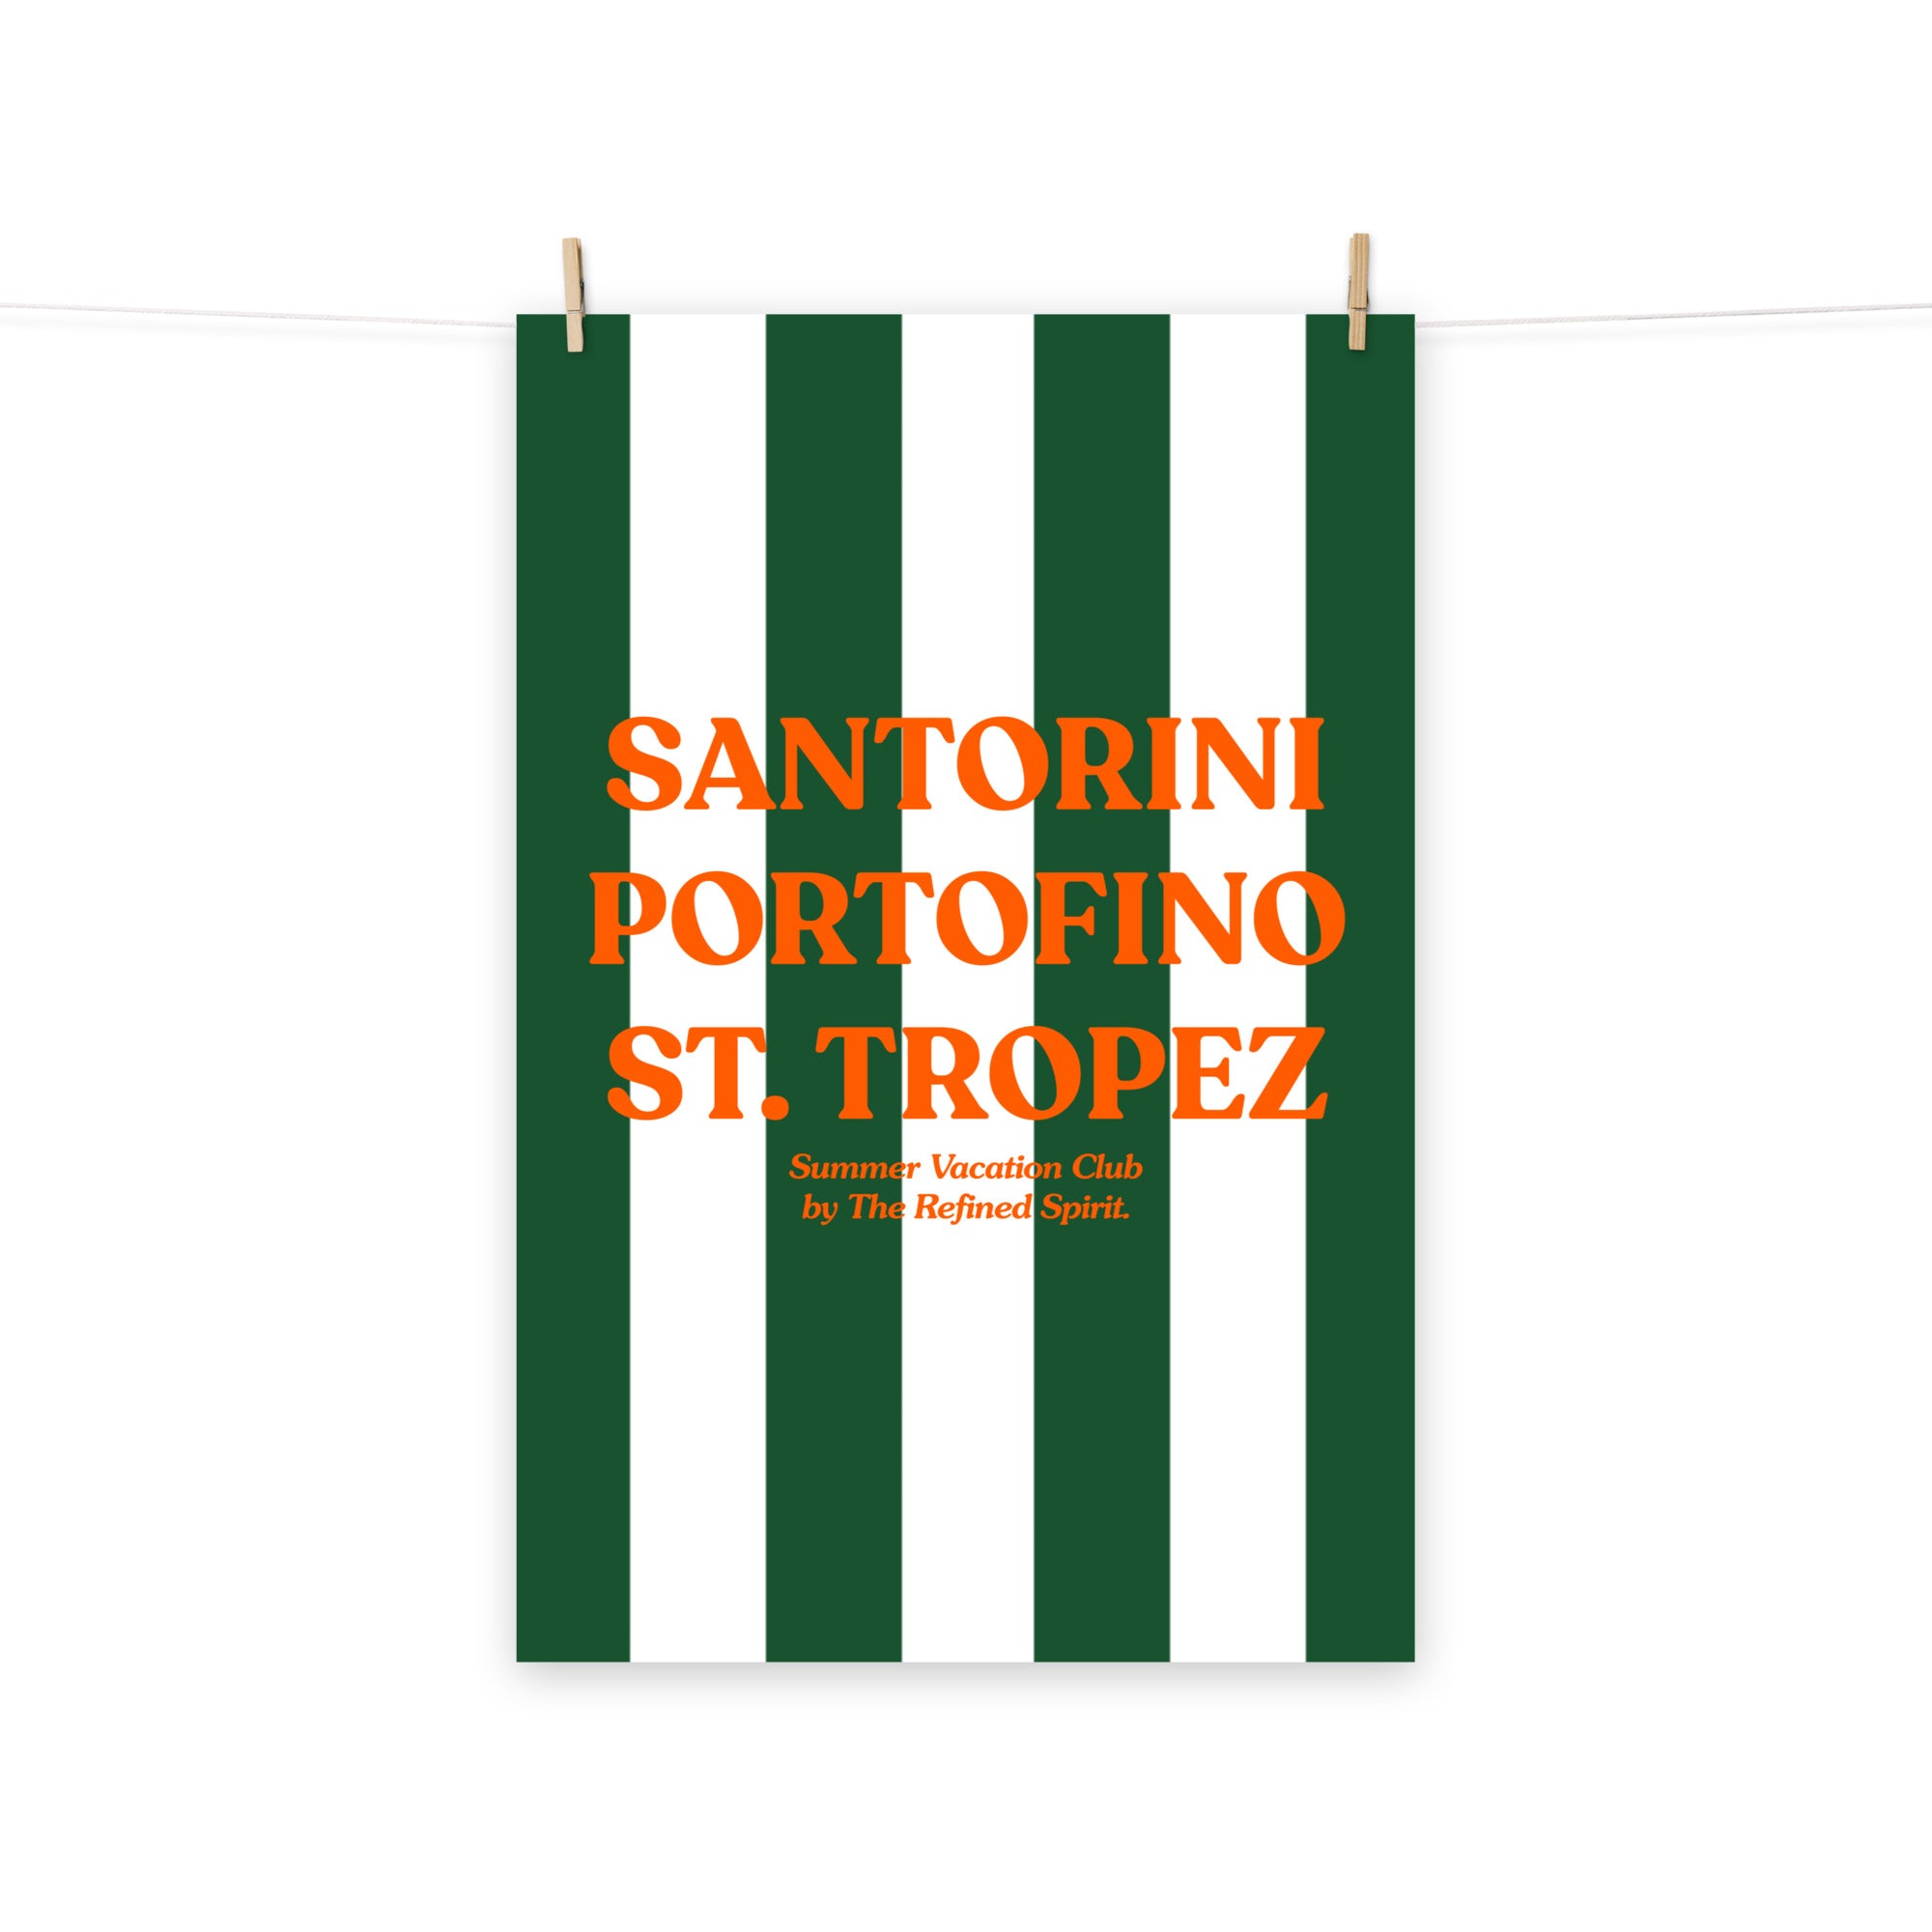 Santorini Portofino St. Tropez - Poster